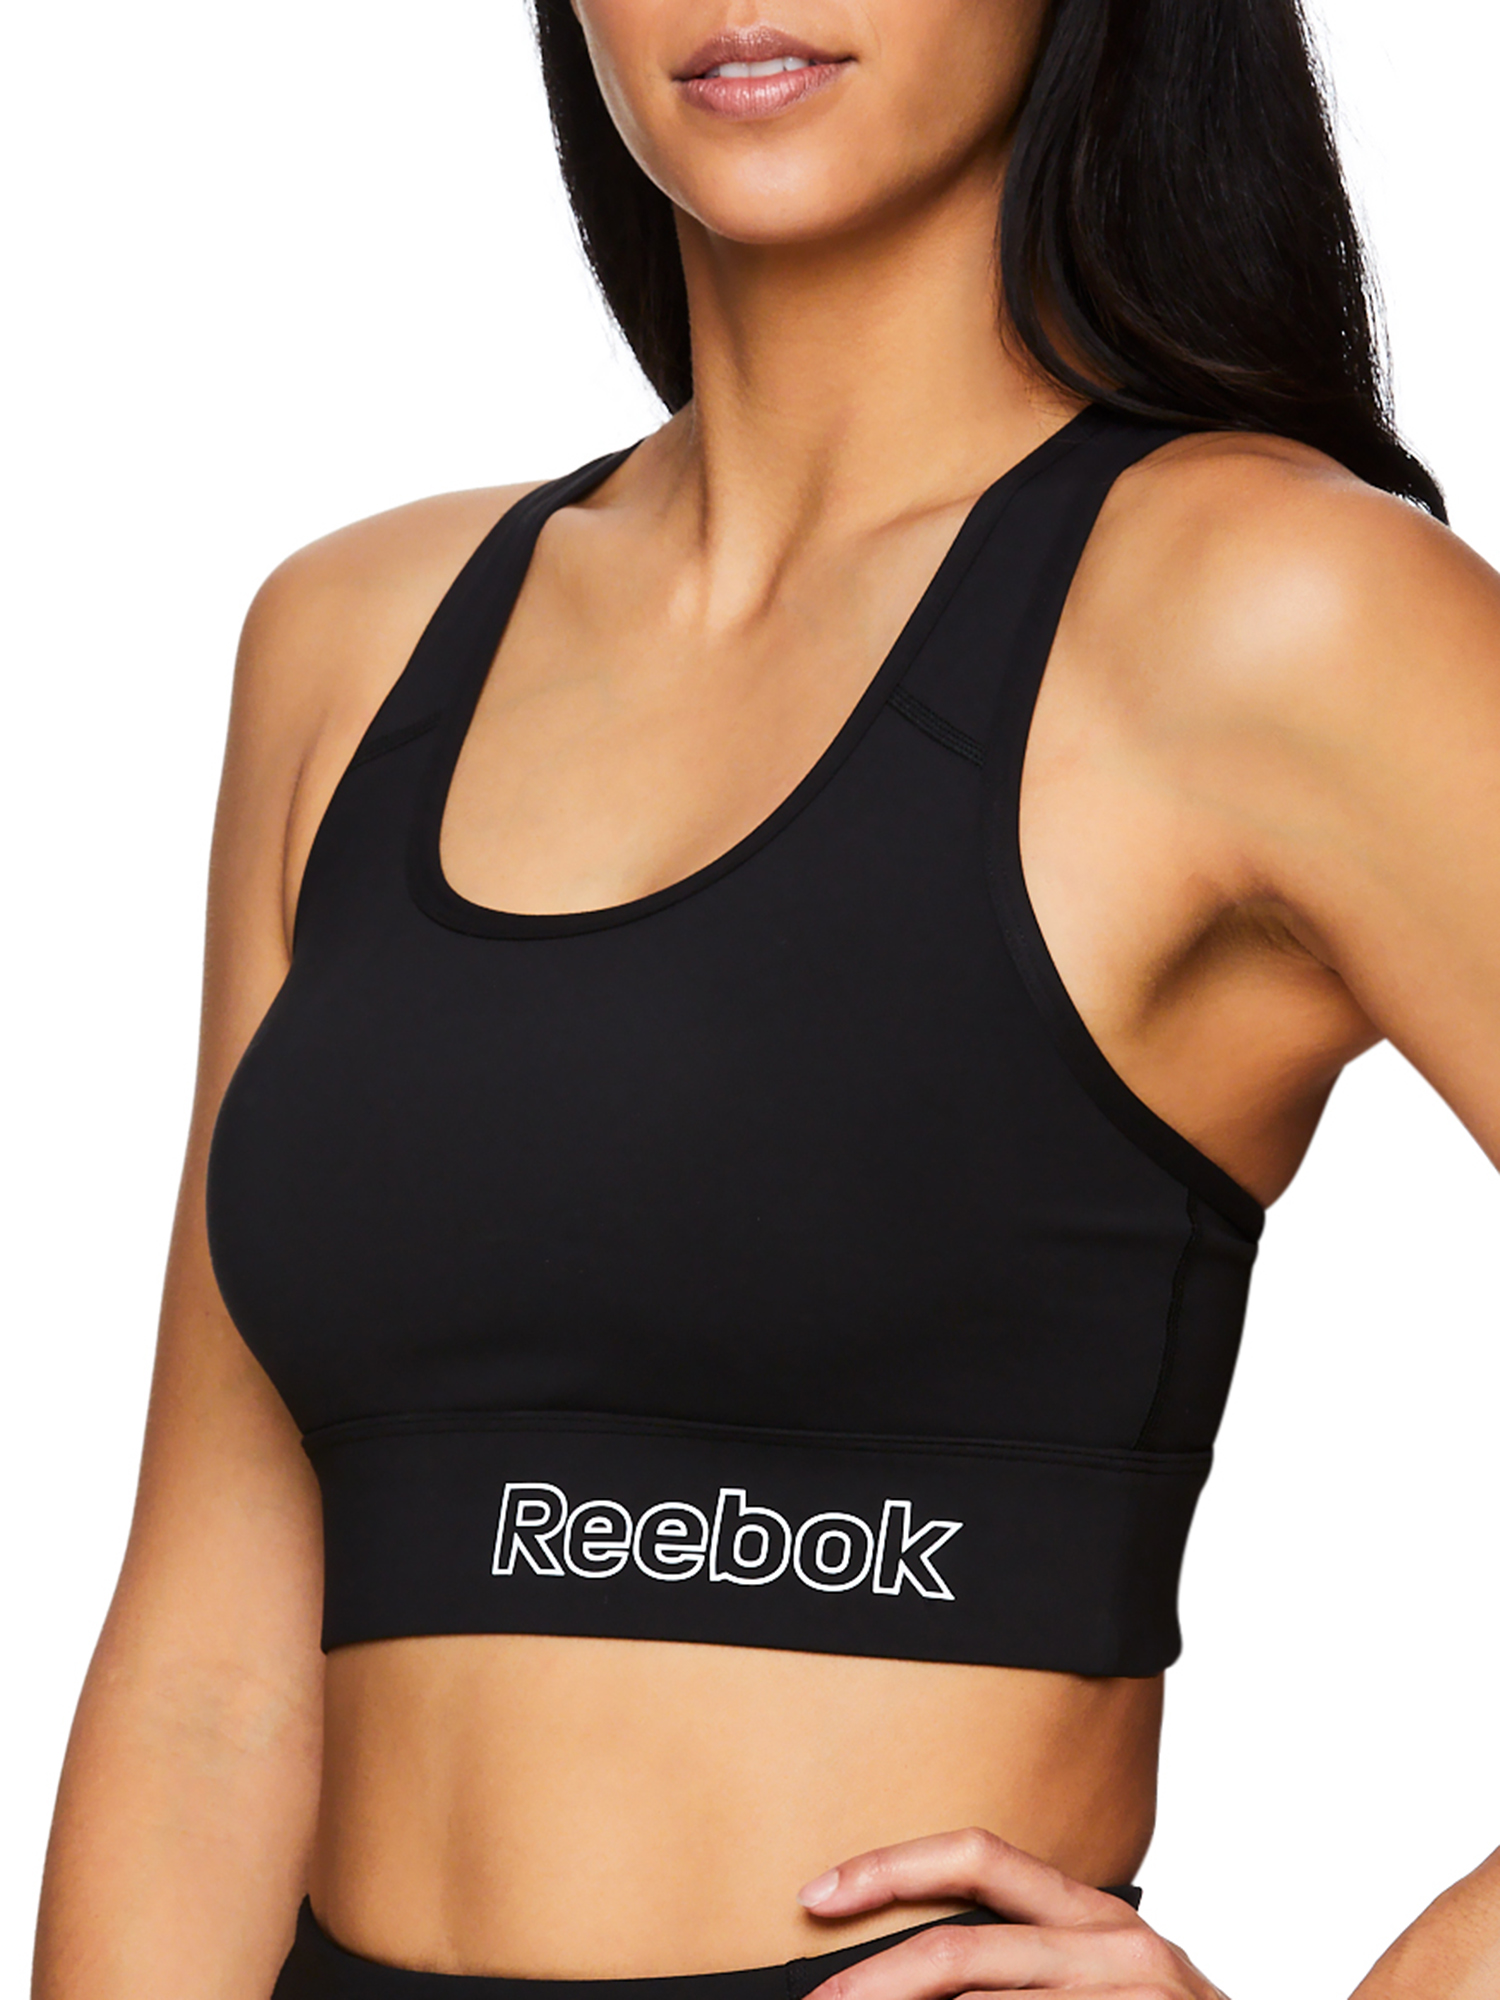 リーボック REEBOK Intimates Black Removable Pads Sleepwear Sports Bra Size: XS  レディース - インナー・下着・ランジェリー